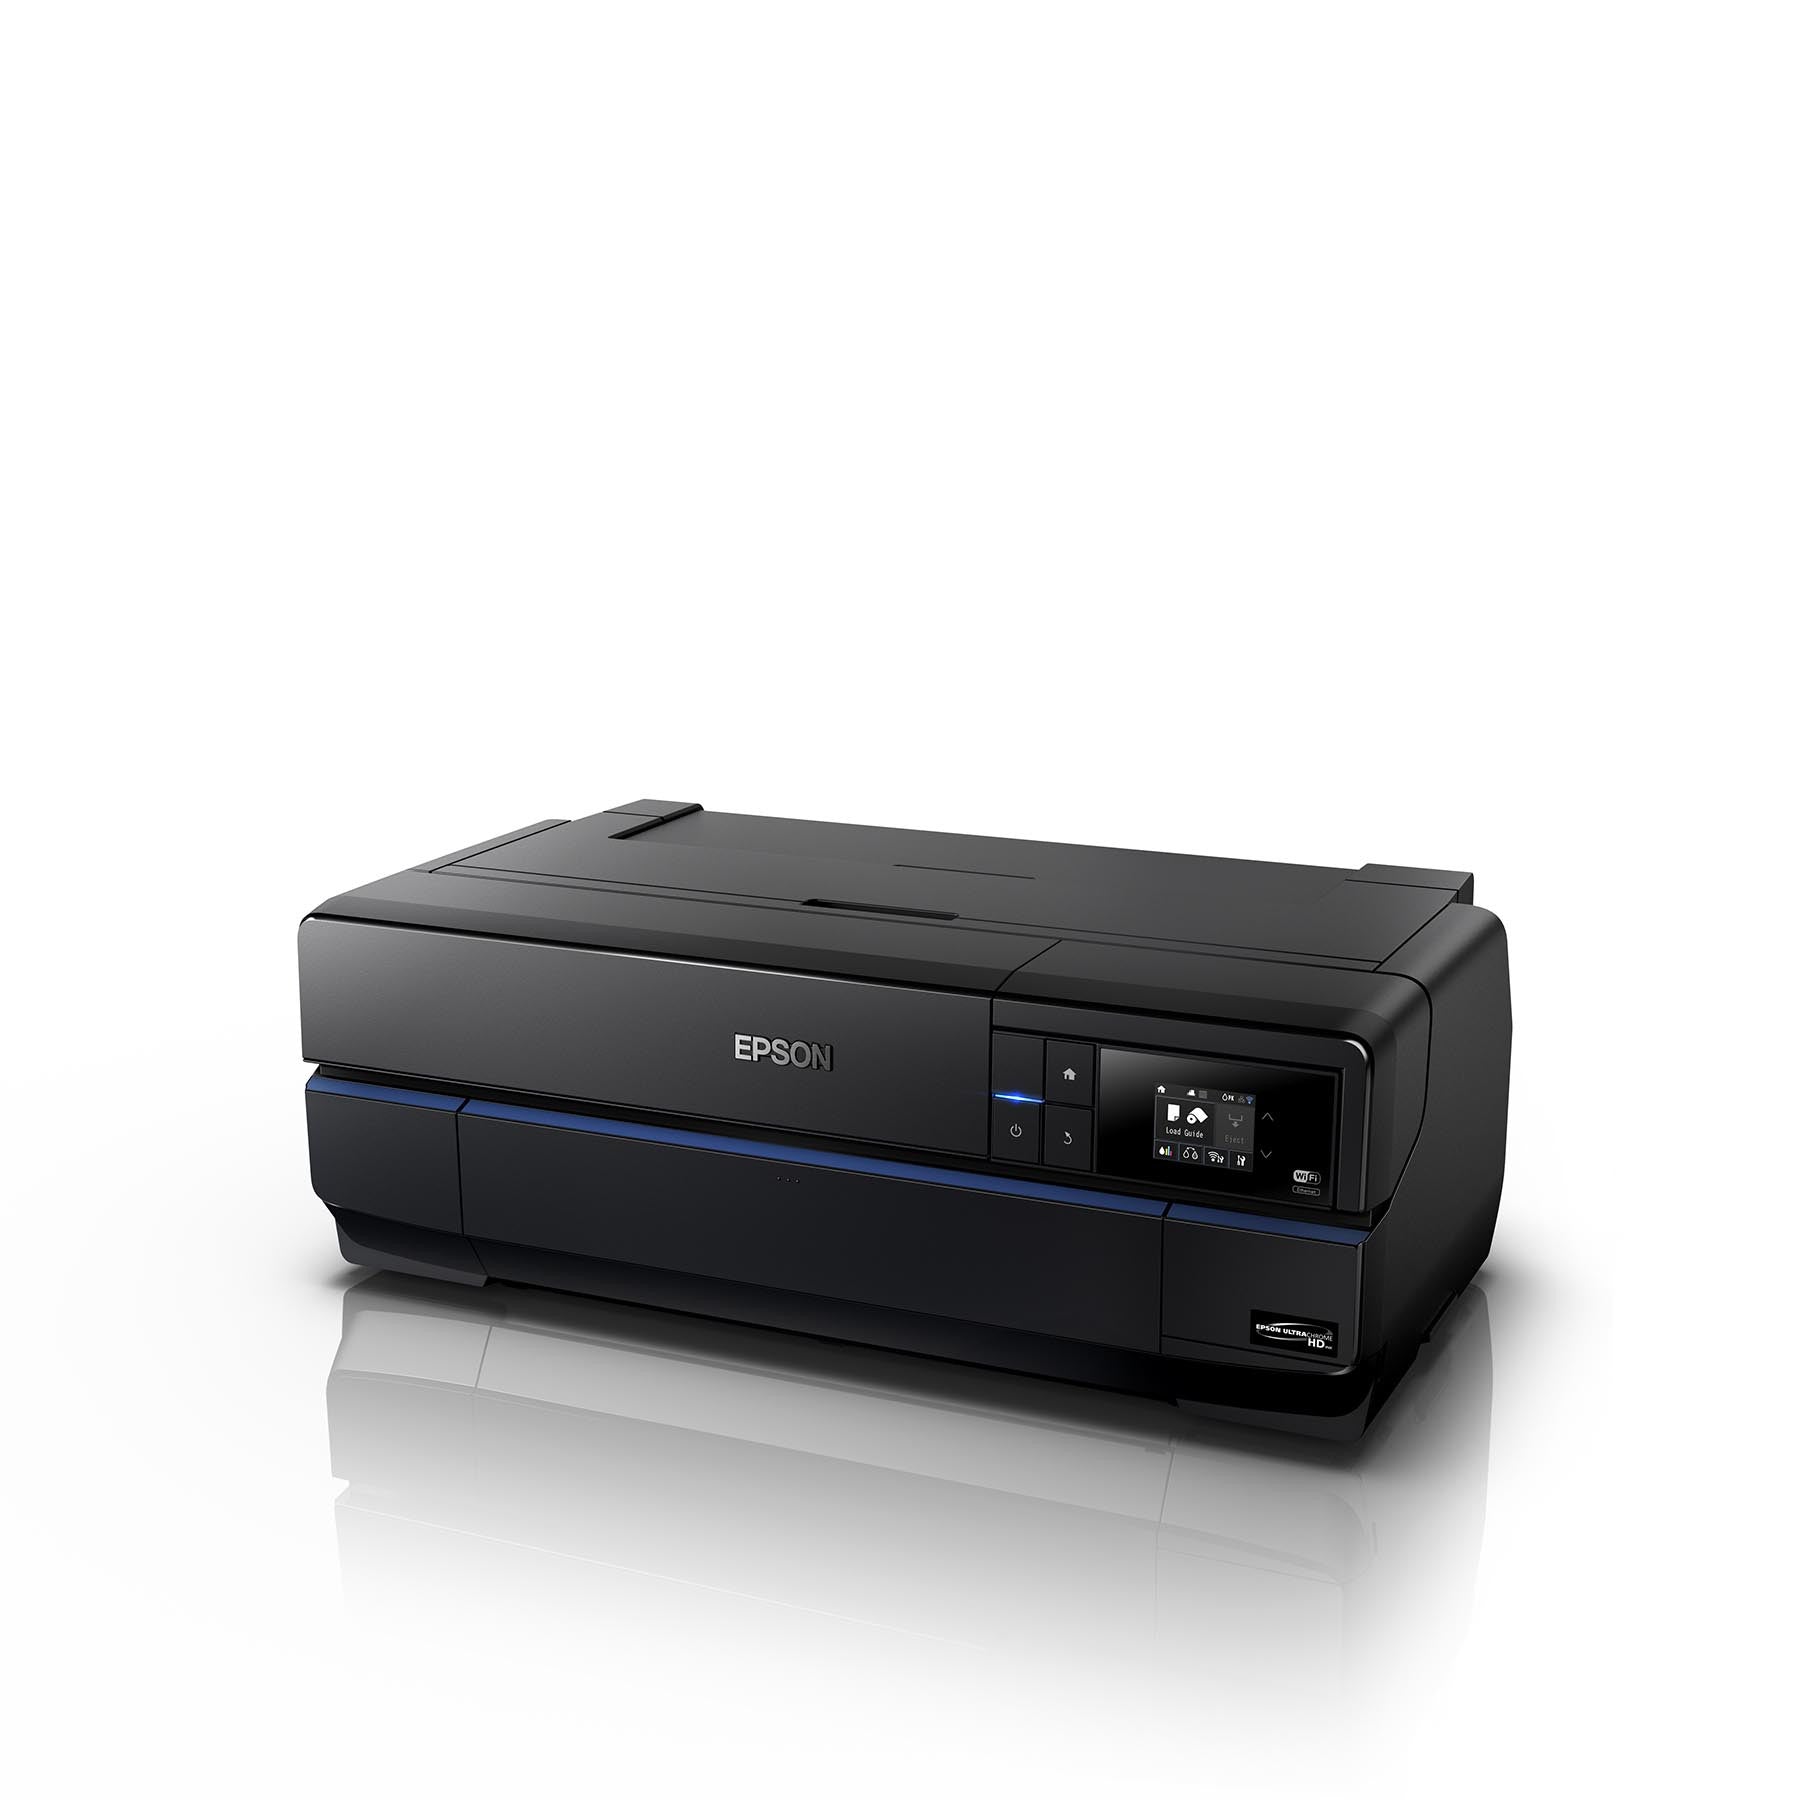 Epson Surecolor P800 Printer, printers large format, Epson - Pictureline  - 2